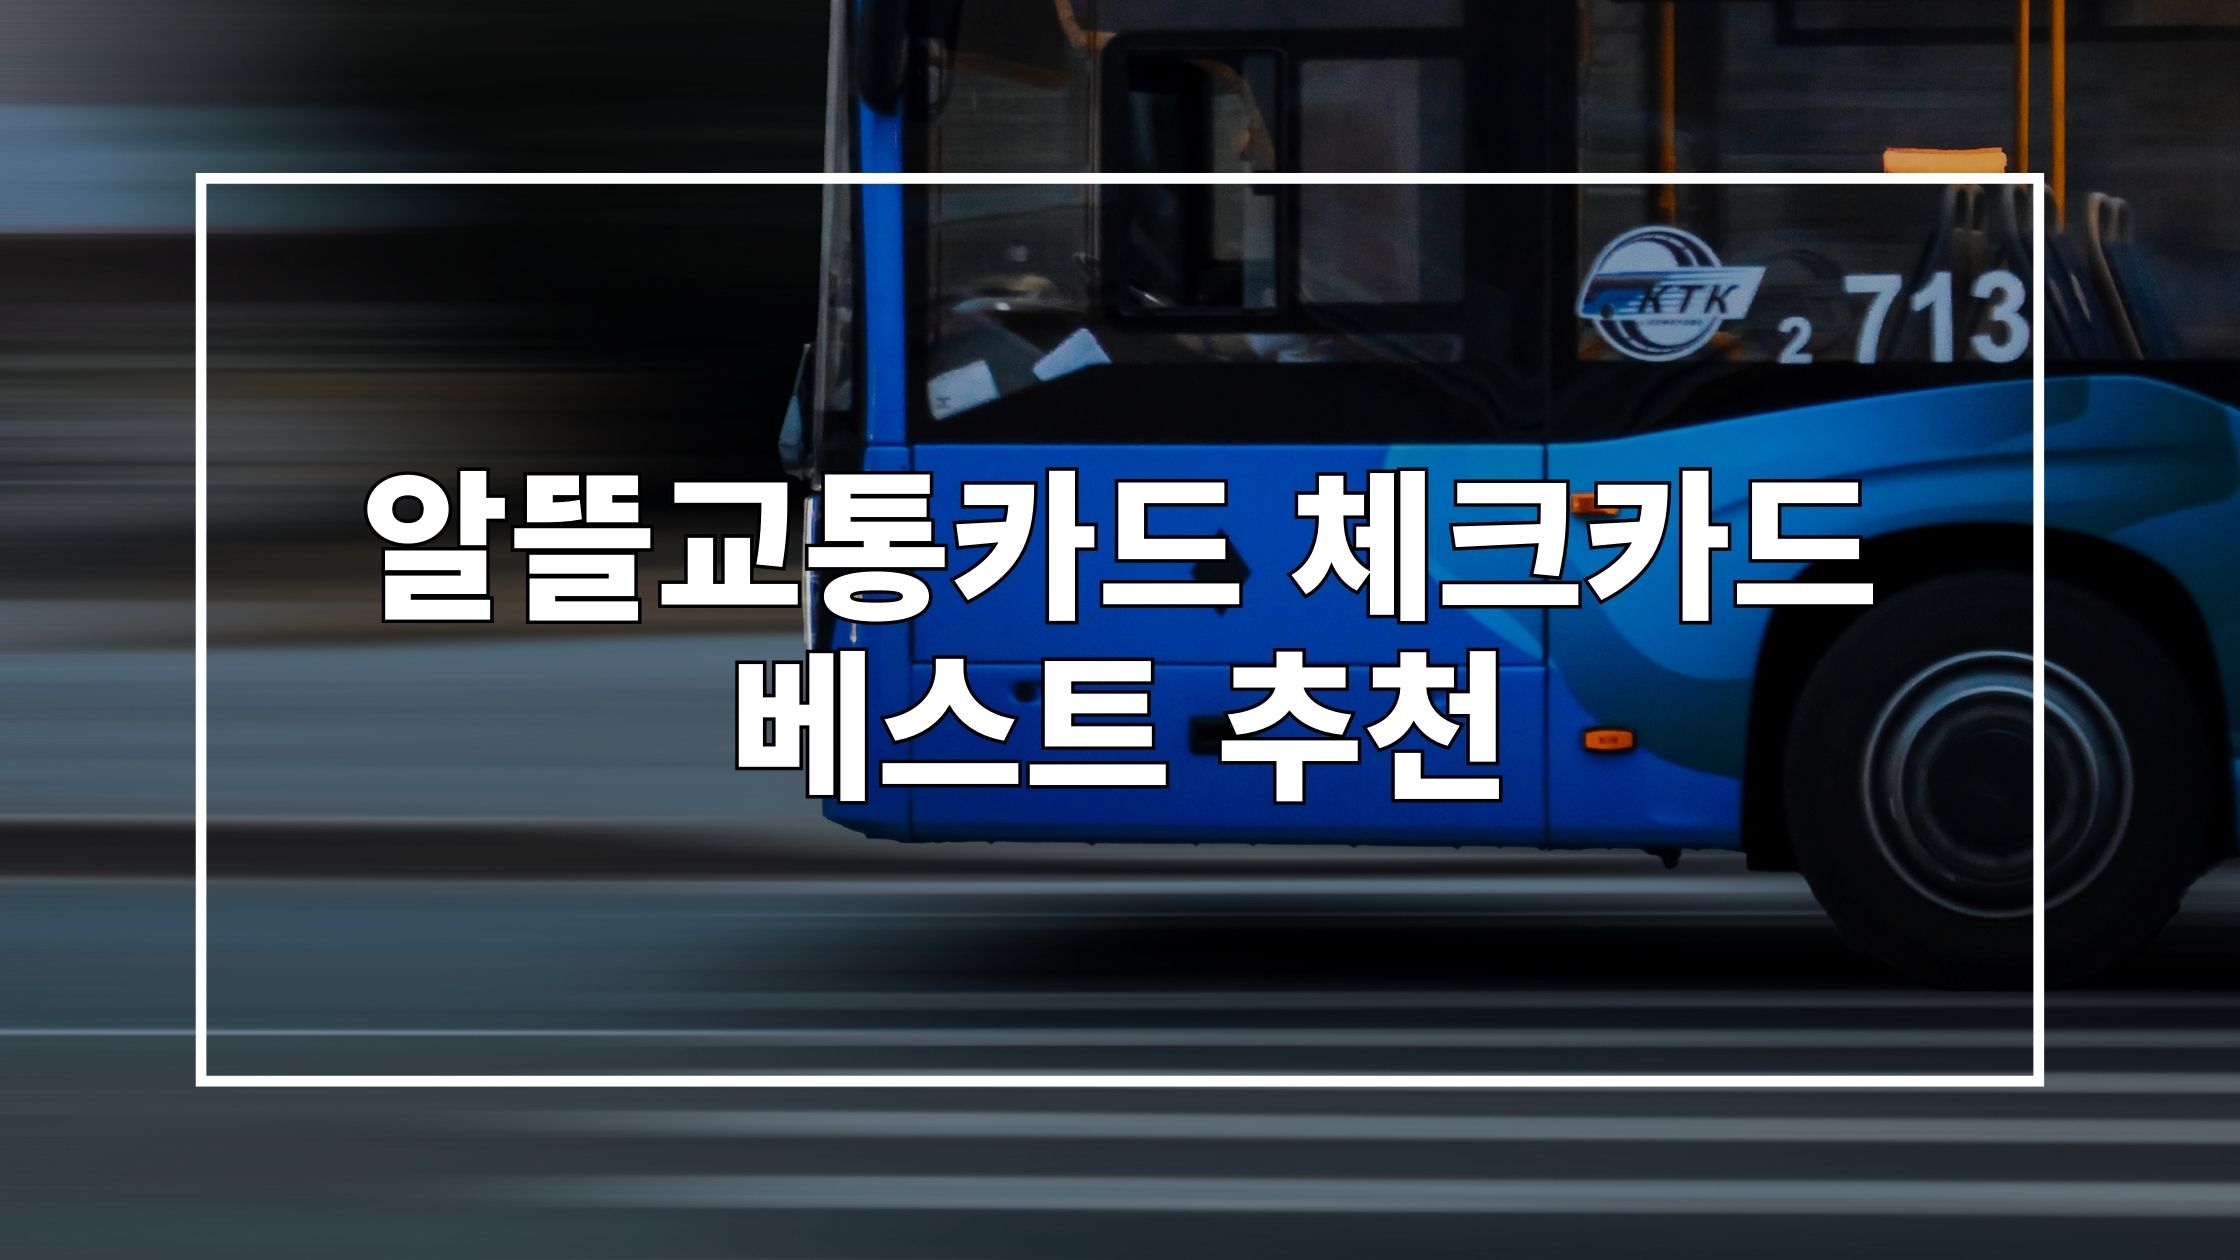 빠르게 지나가는 파란색 버스를 촬영한 사진 위에 '알뜰교통카드 체크카드 베스트 추천'이라는 제목이 쓰여 있는 썸네일 이미지입니다.